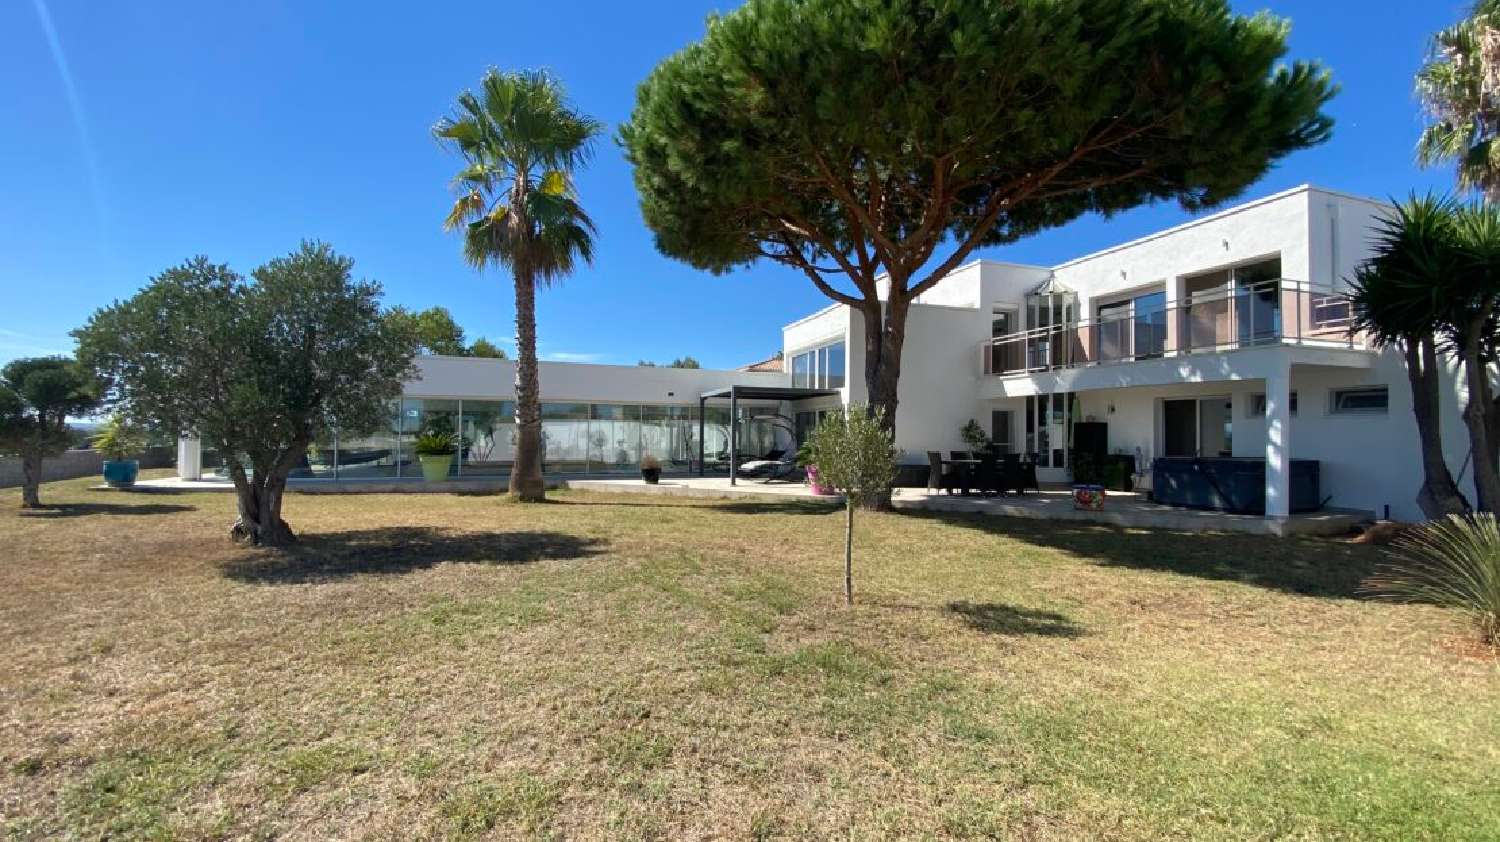  à vendre maison indépendant Béziers Hérault 1